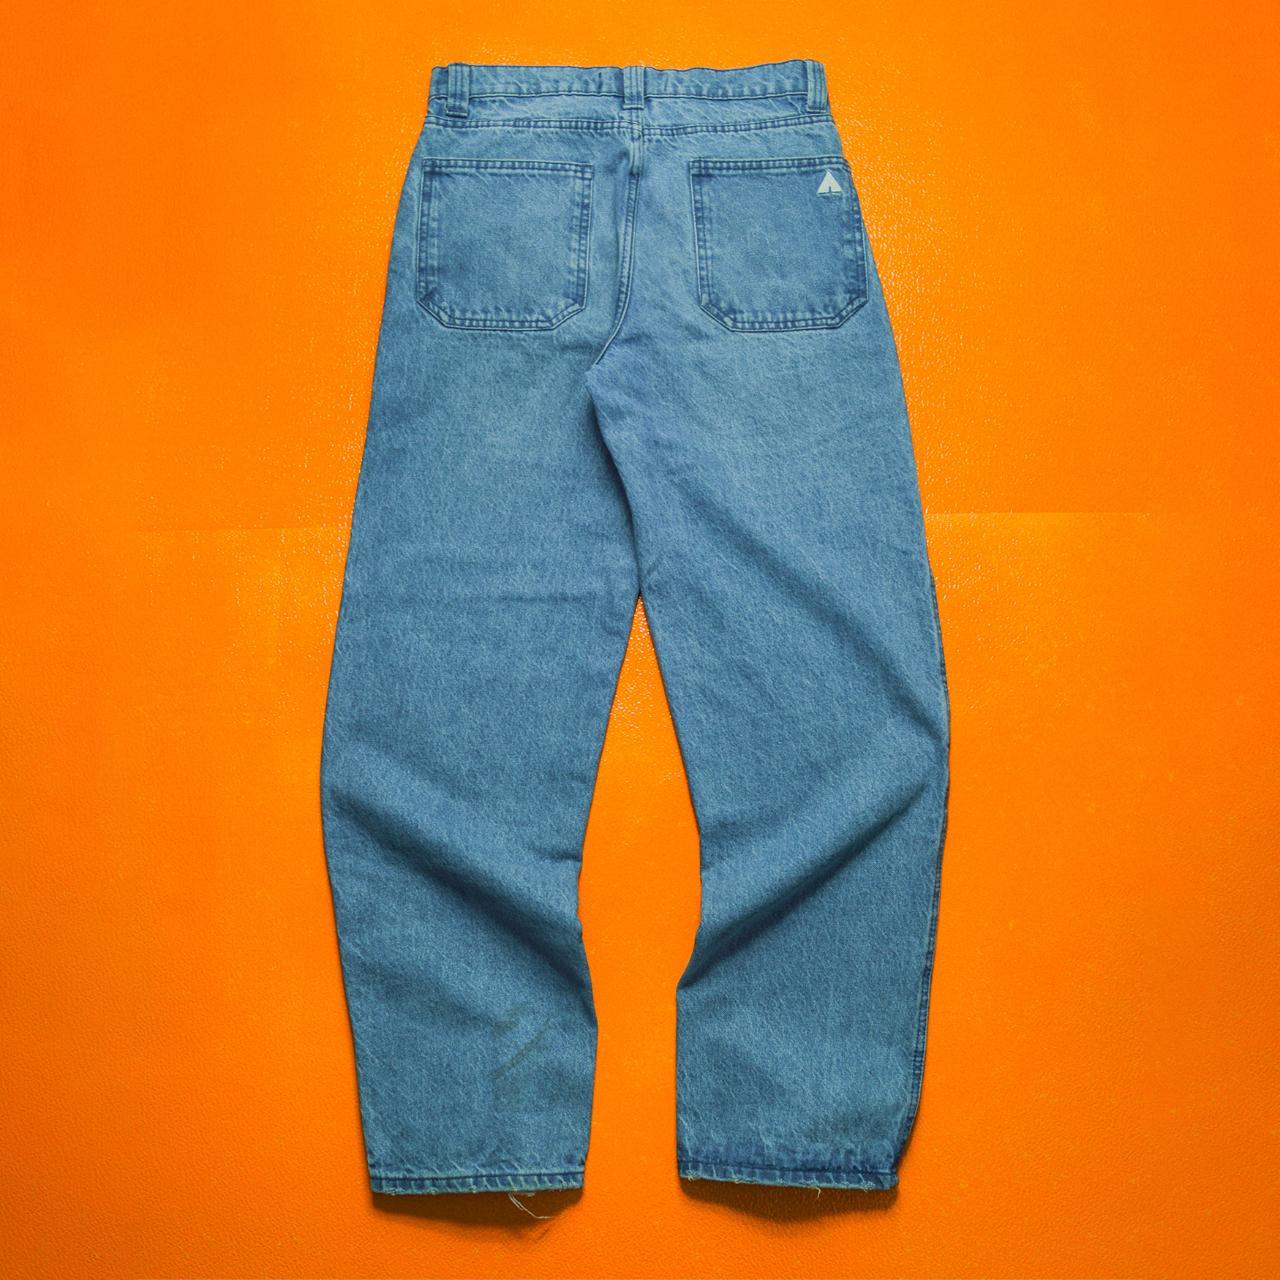 Airwalk Vintage Medium Wash Knee Panelled Jeans... - Depop